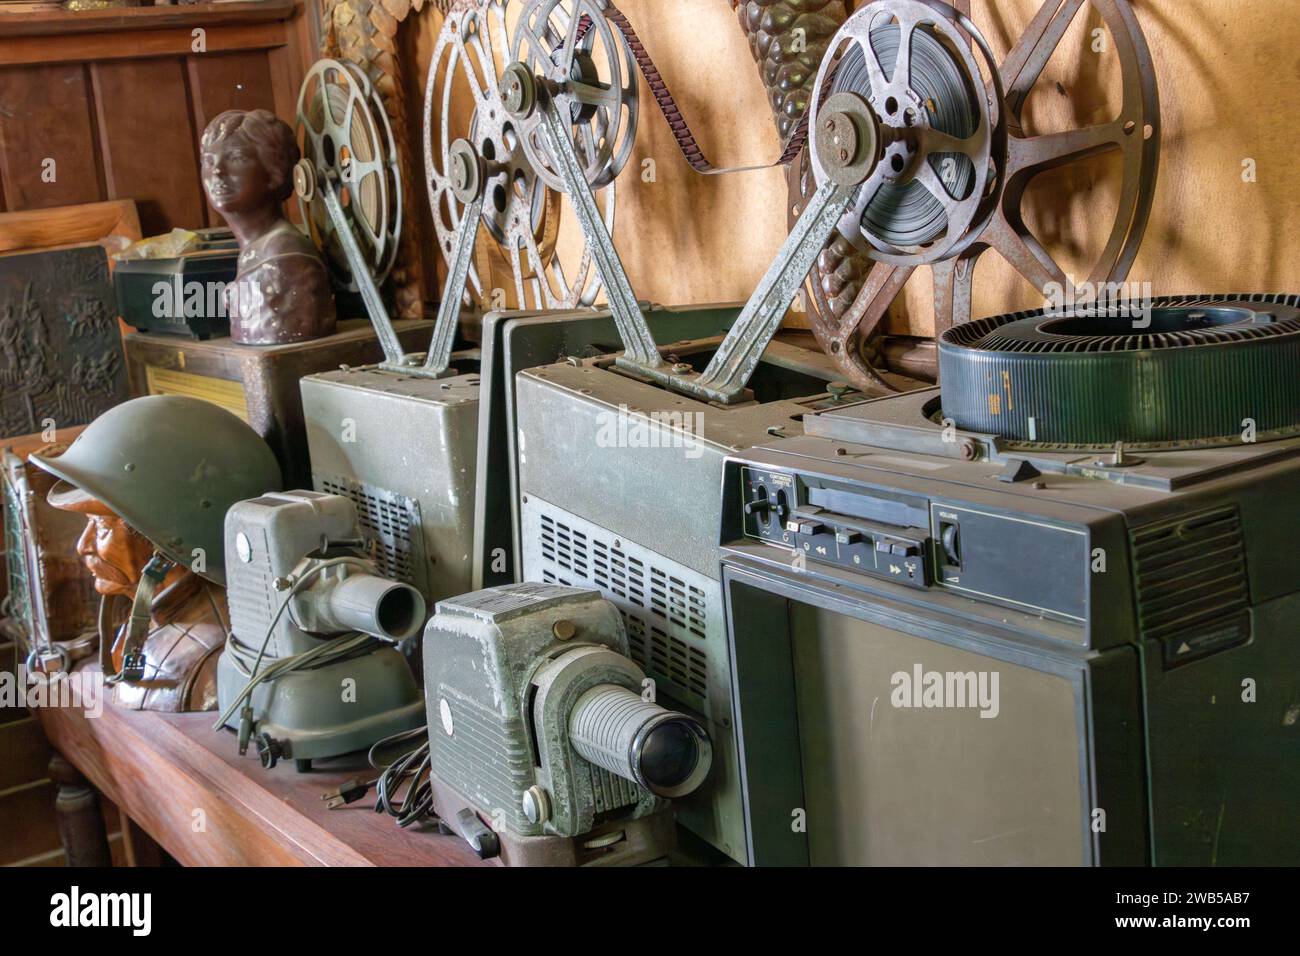 Une collection poussiéreuse de vieux équipements audiovisuels Banque D'Images